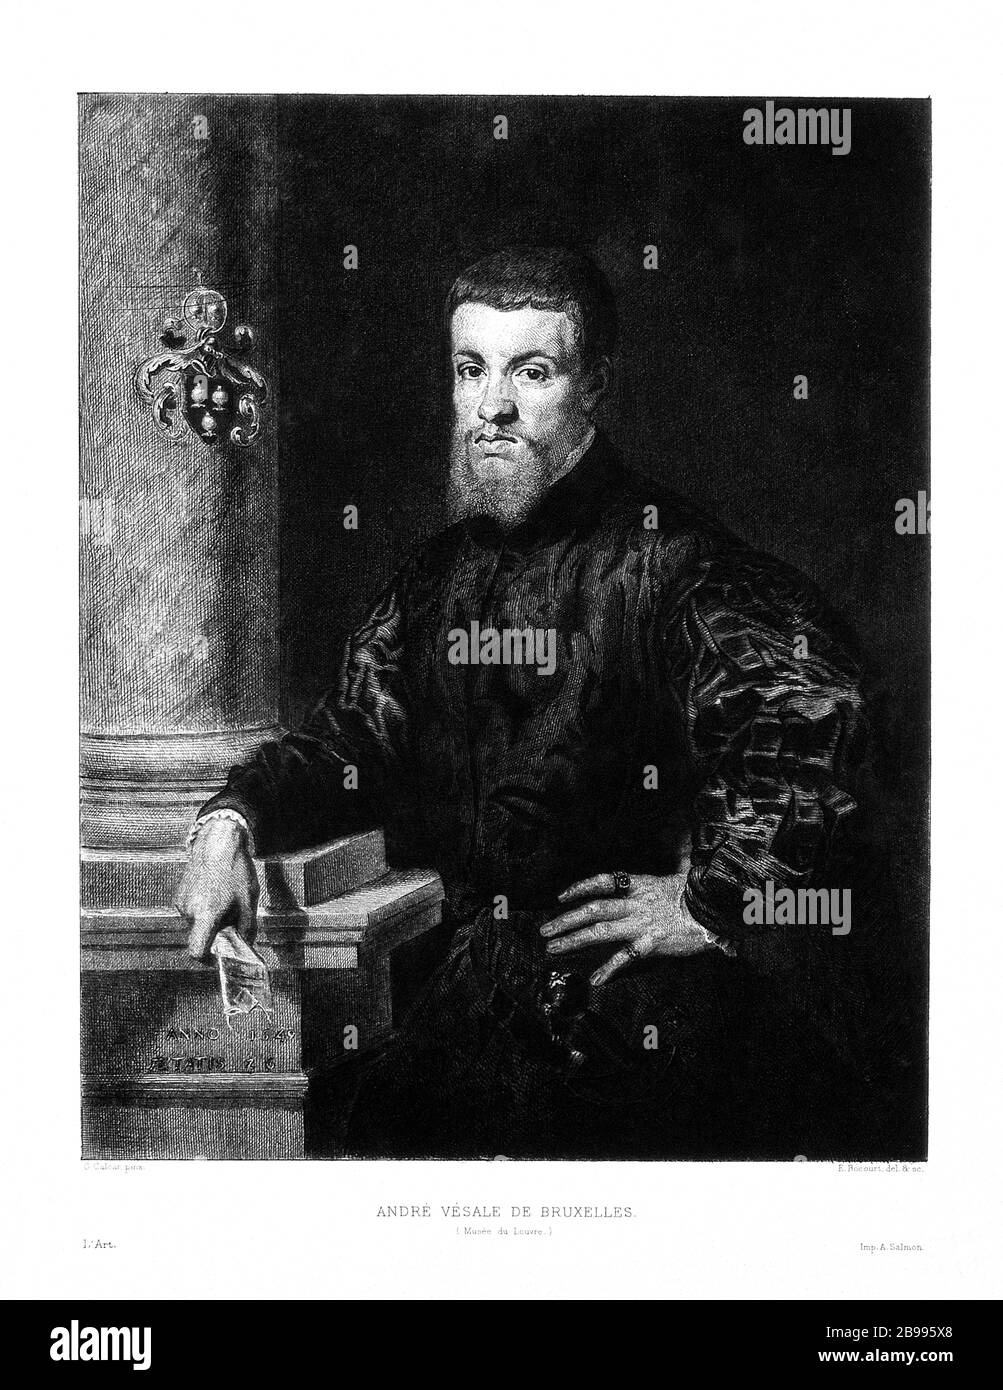 1549, BELGIO :ANDREAS VESALIUS (1514 - 1564), anatomista fiammingo, alias Andreas van Wesel . Autor di De Humani Corporis Fabrica Libri Septem (sul tessuto del corpo umano). Ritratto di E. Boucourt dopo Jan Stephan Van calcar , a Musèe du Louvre , Parigi. - ANATOMIA - ANATOMIA - ANATOMISTA - ANATOMISTA - scienziato - ritratto - DOTTORE - MEDICO - MEDICINA - medicina - SCIENZA - SCIENZA - DOTTORE - MEDICO - illustrazione - illustrazione - incisione - incisione - barba - barba - BELGIO --- Archivio GBB Foto Stock